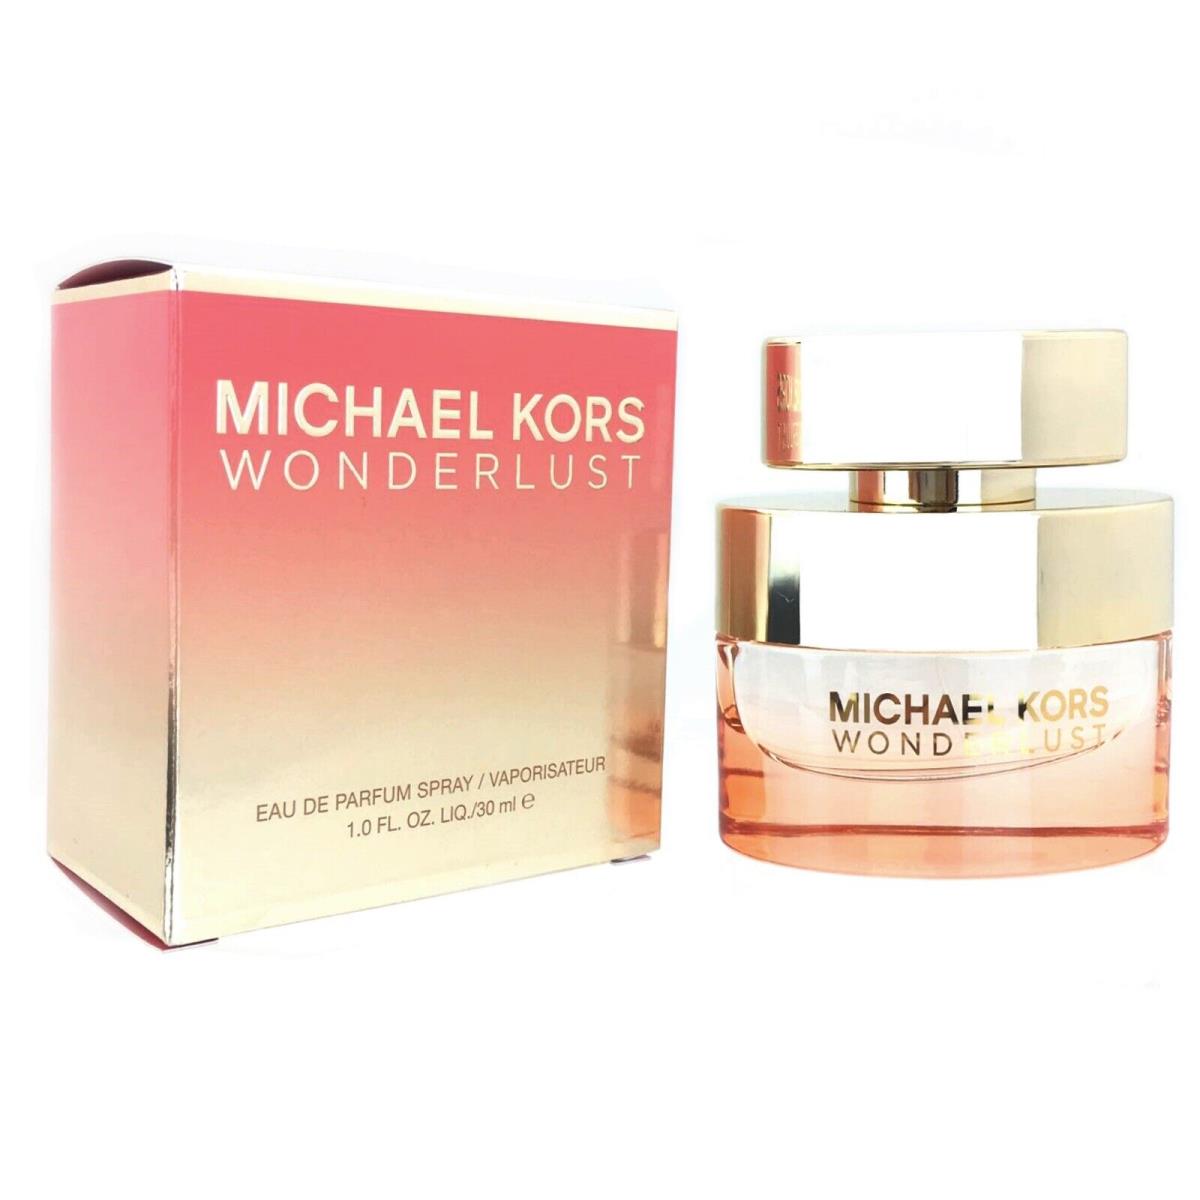 Michael Kors Wonderlust 1.0 oz / 30 ml Edp Spray For Women Not